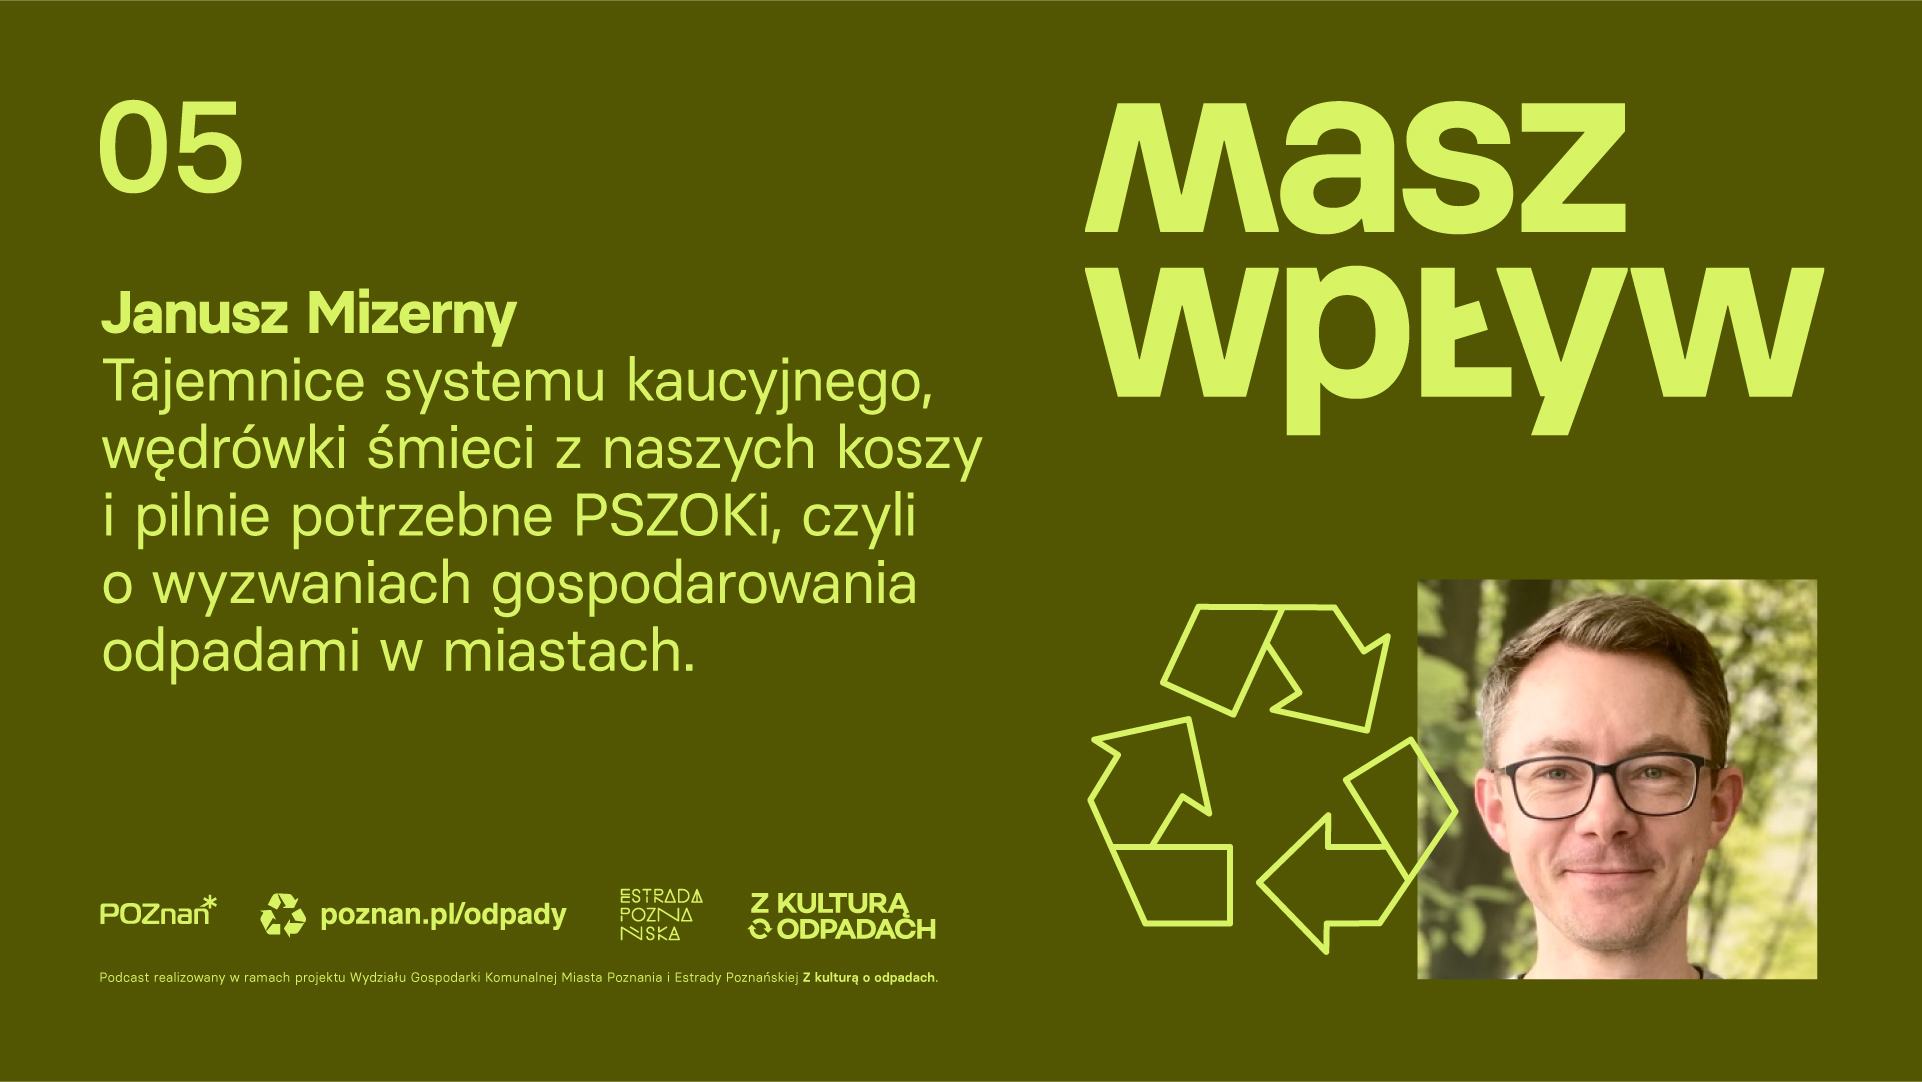 Podcast Masz wpływ odc. 5 - Janusz Mizerny opowiada o systemie kaucyjnym